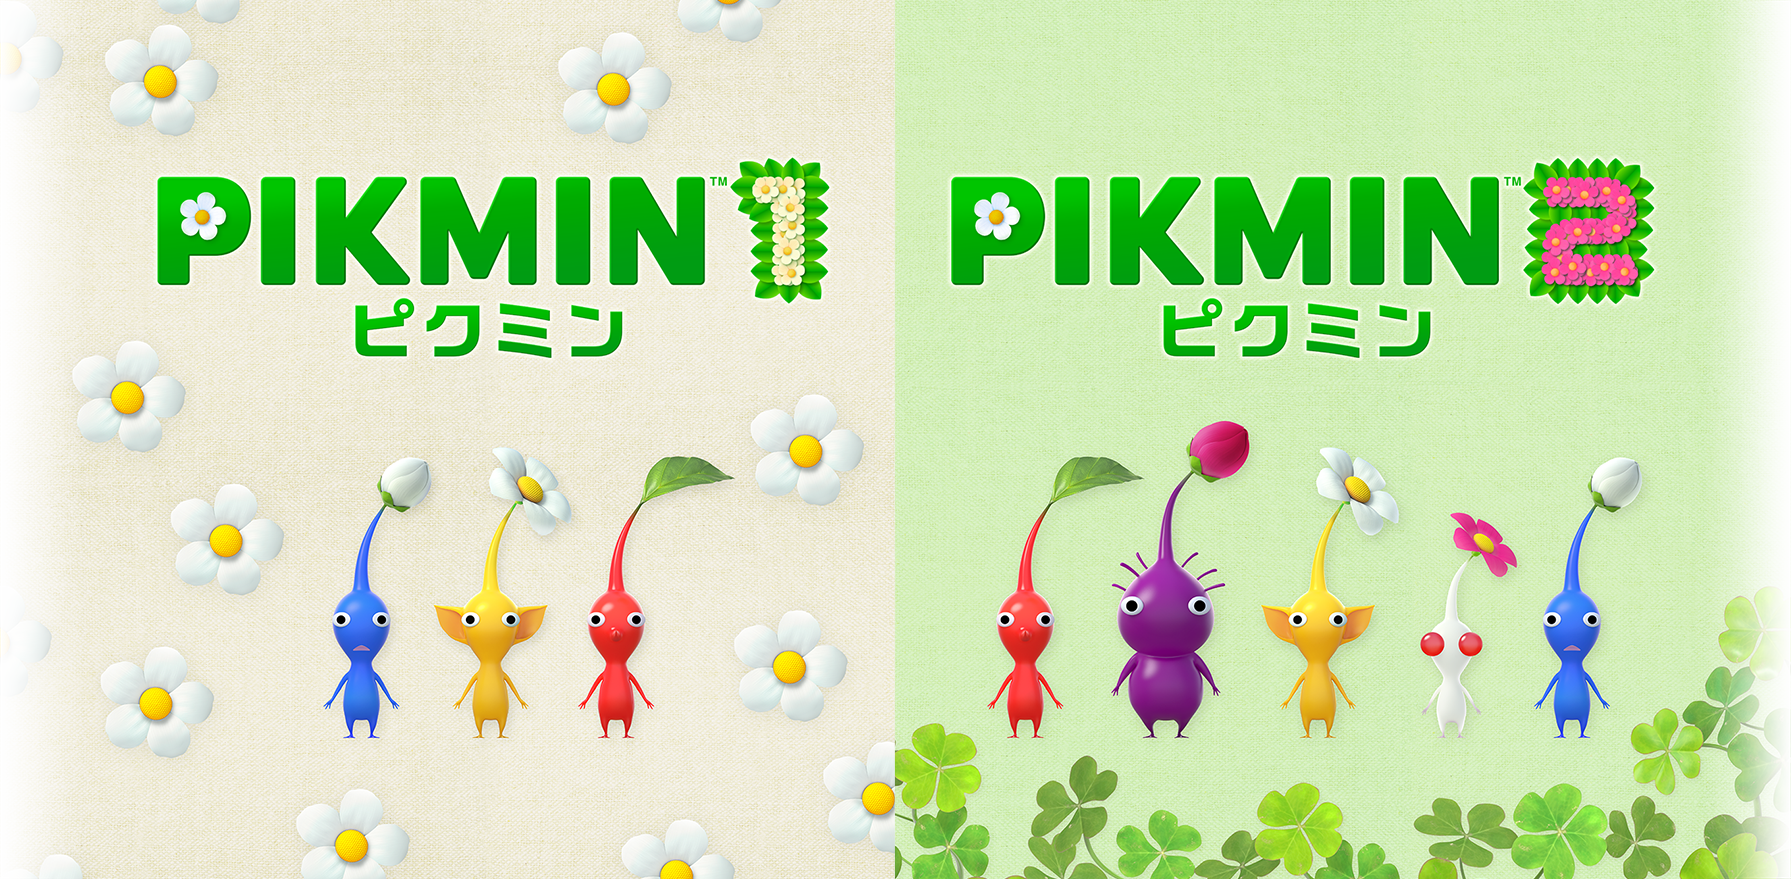 Pikmin 1 + 2 - Nintendo Switch - U.S. Edition 